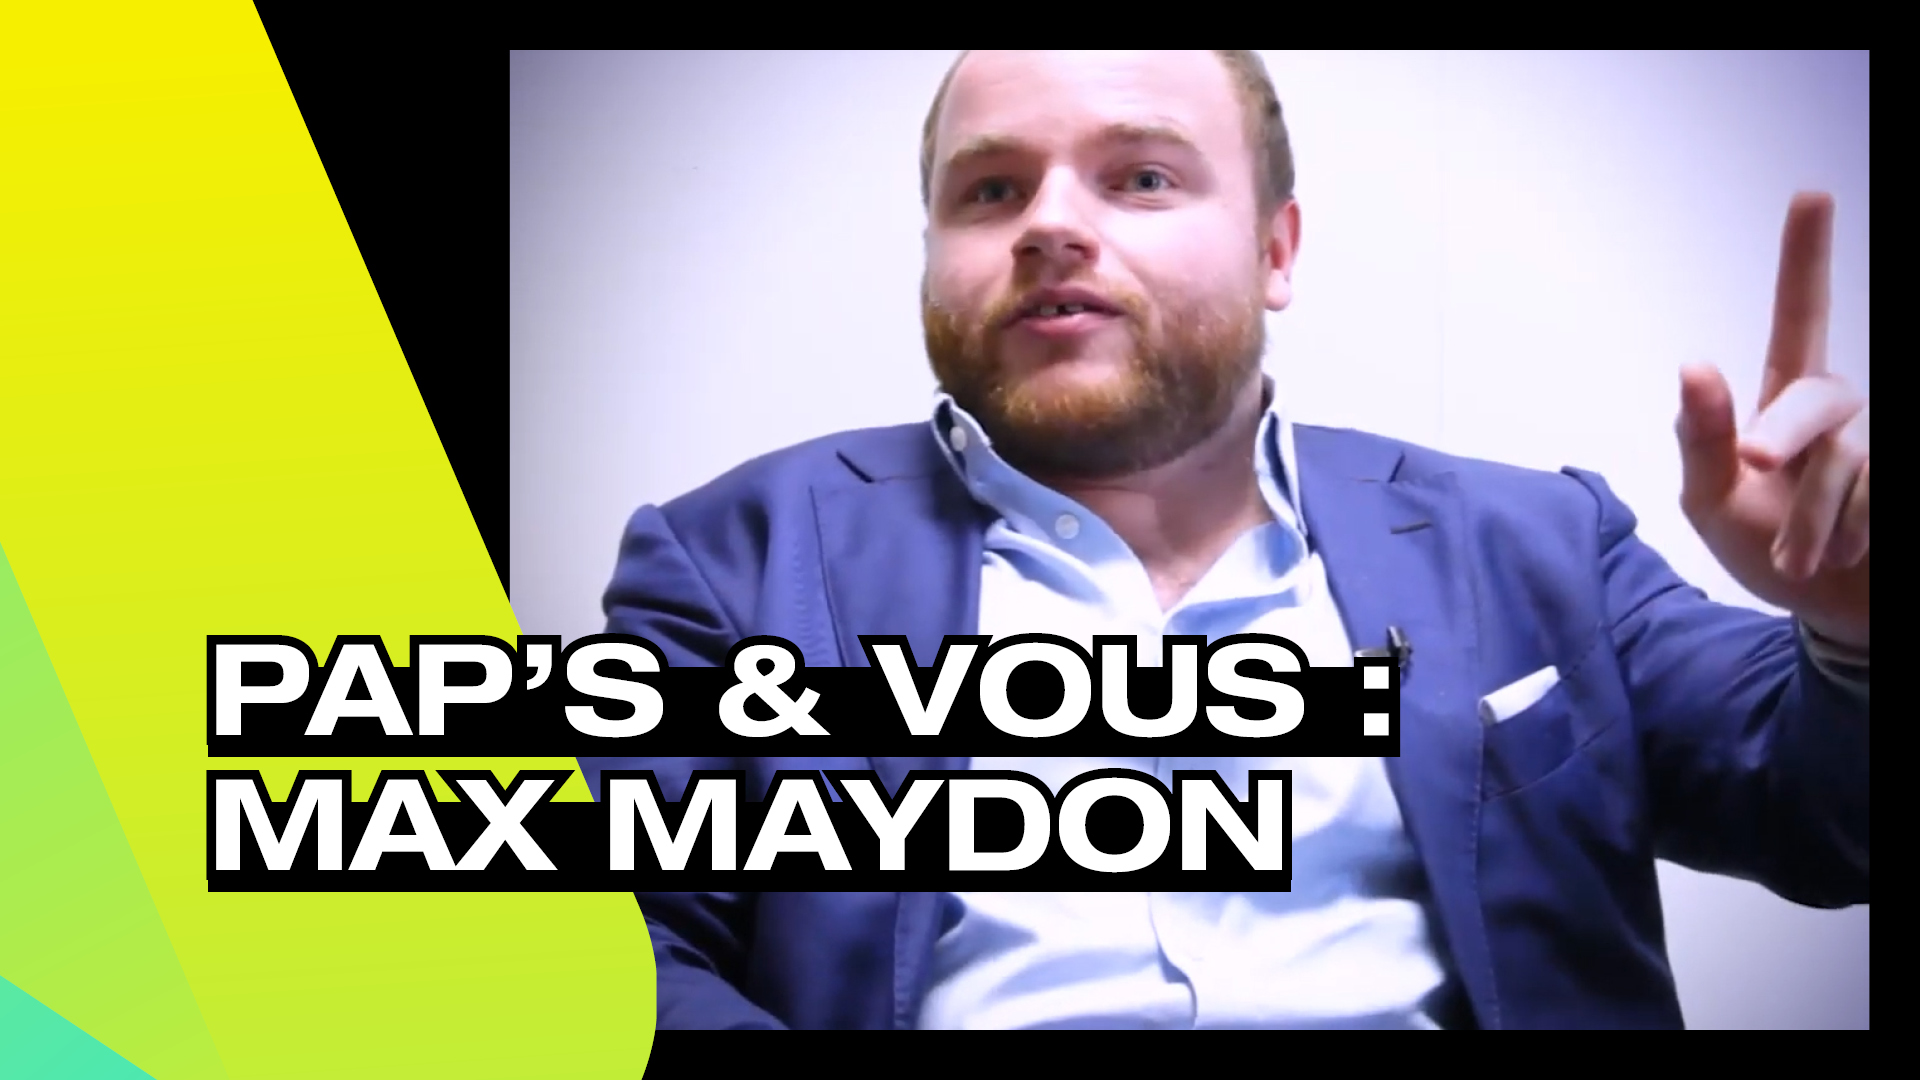 Pap's & vous Max Maydon - L'accessibilité